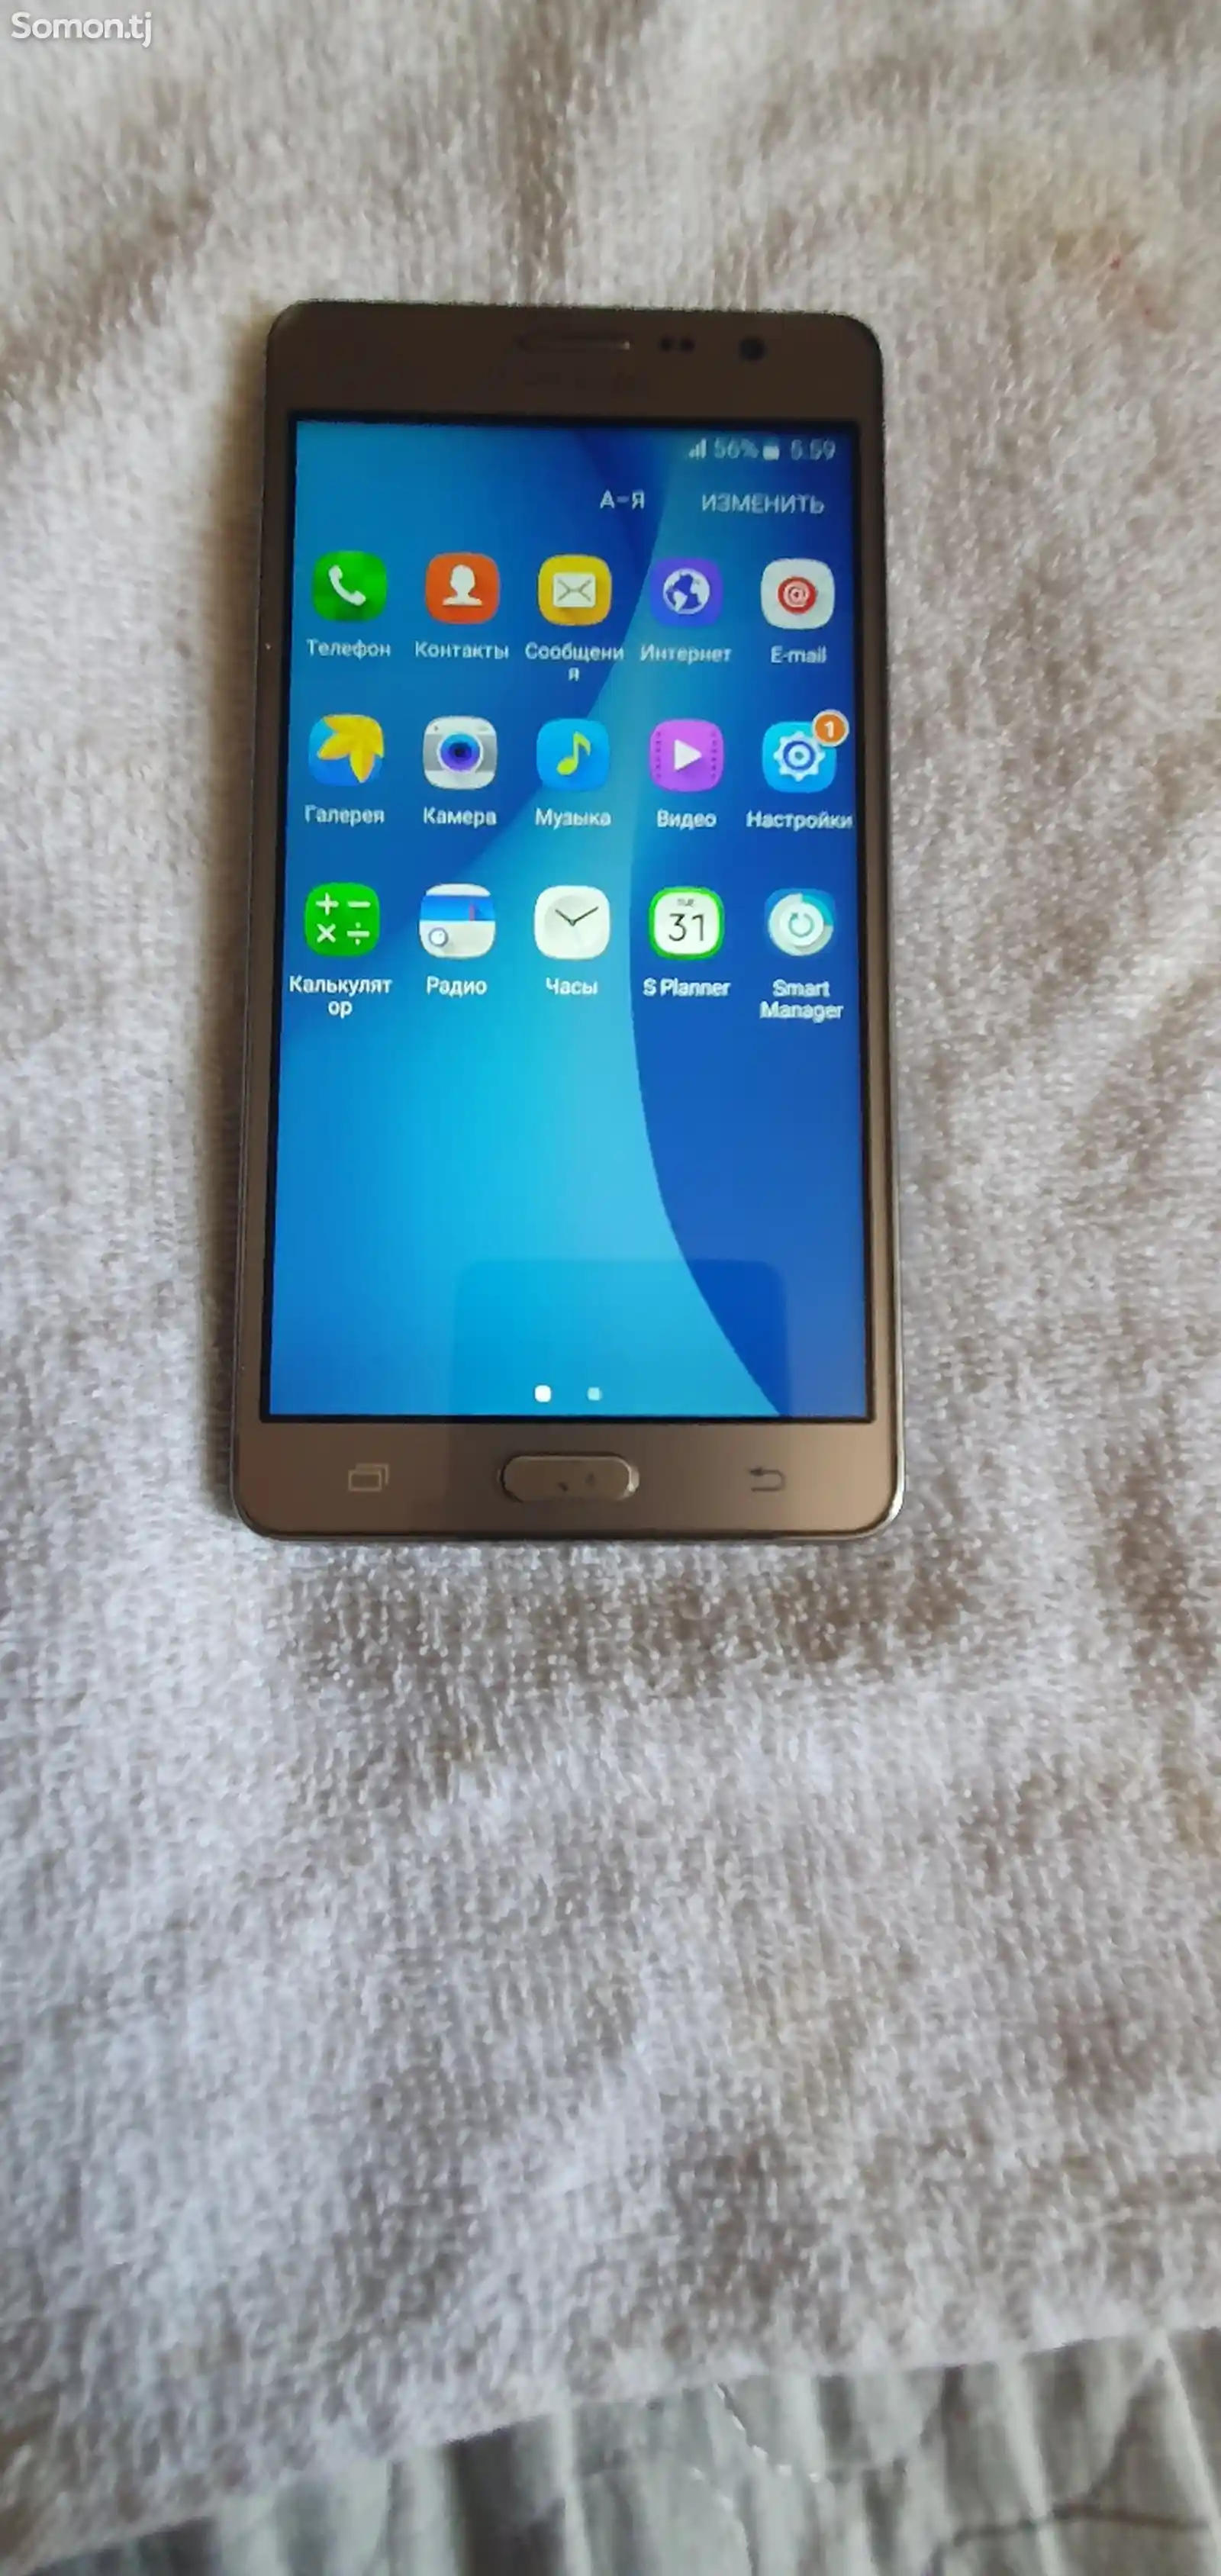 Samsung Galaxy Oh7 2016-5